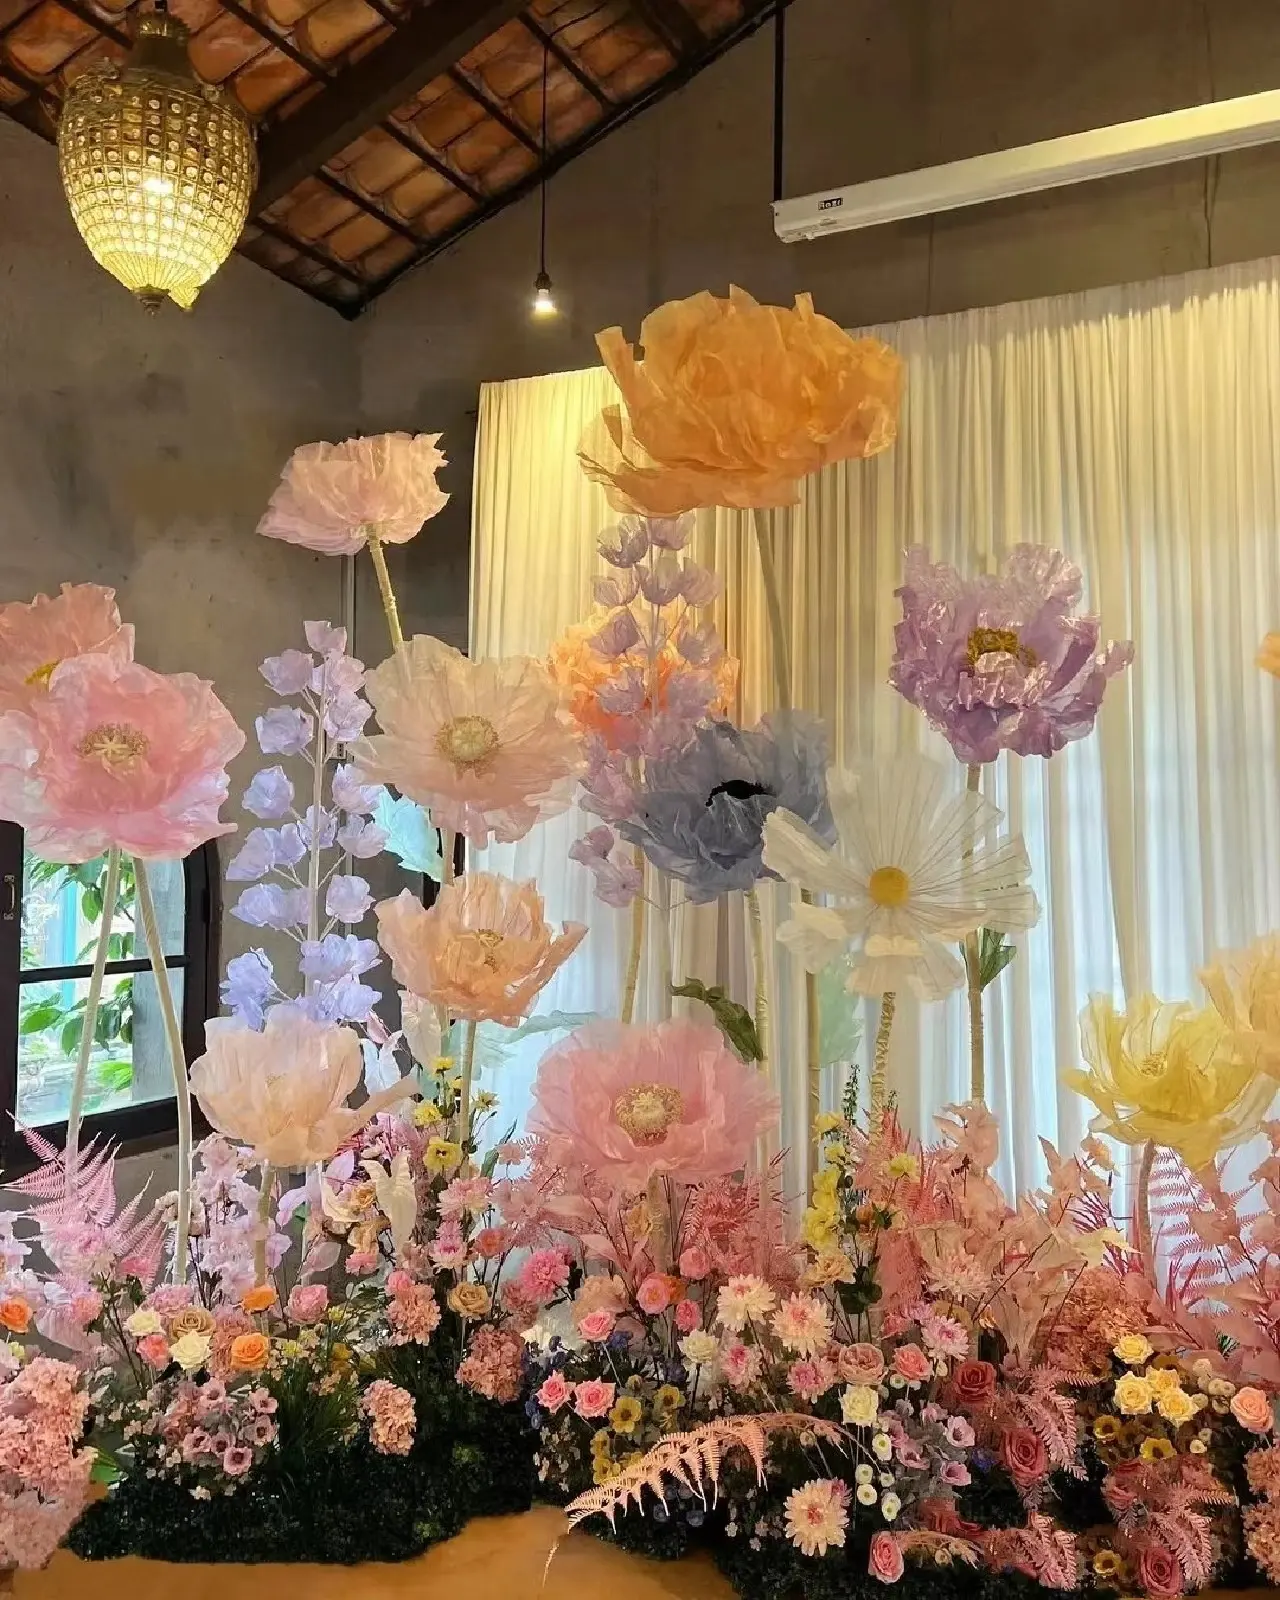 Özel dev çiçek serbest duran seti düğün kaynağı ev dekorasyon festivali dekor ipek organze kağıt eva malzeme